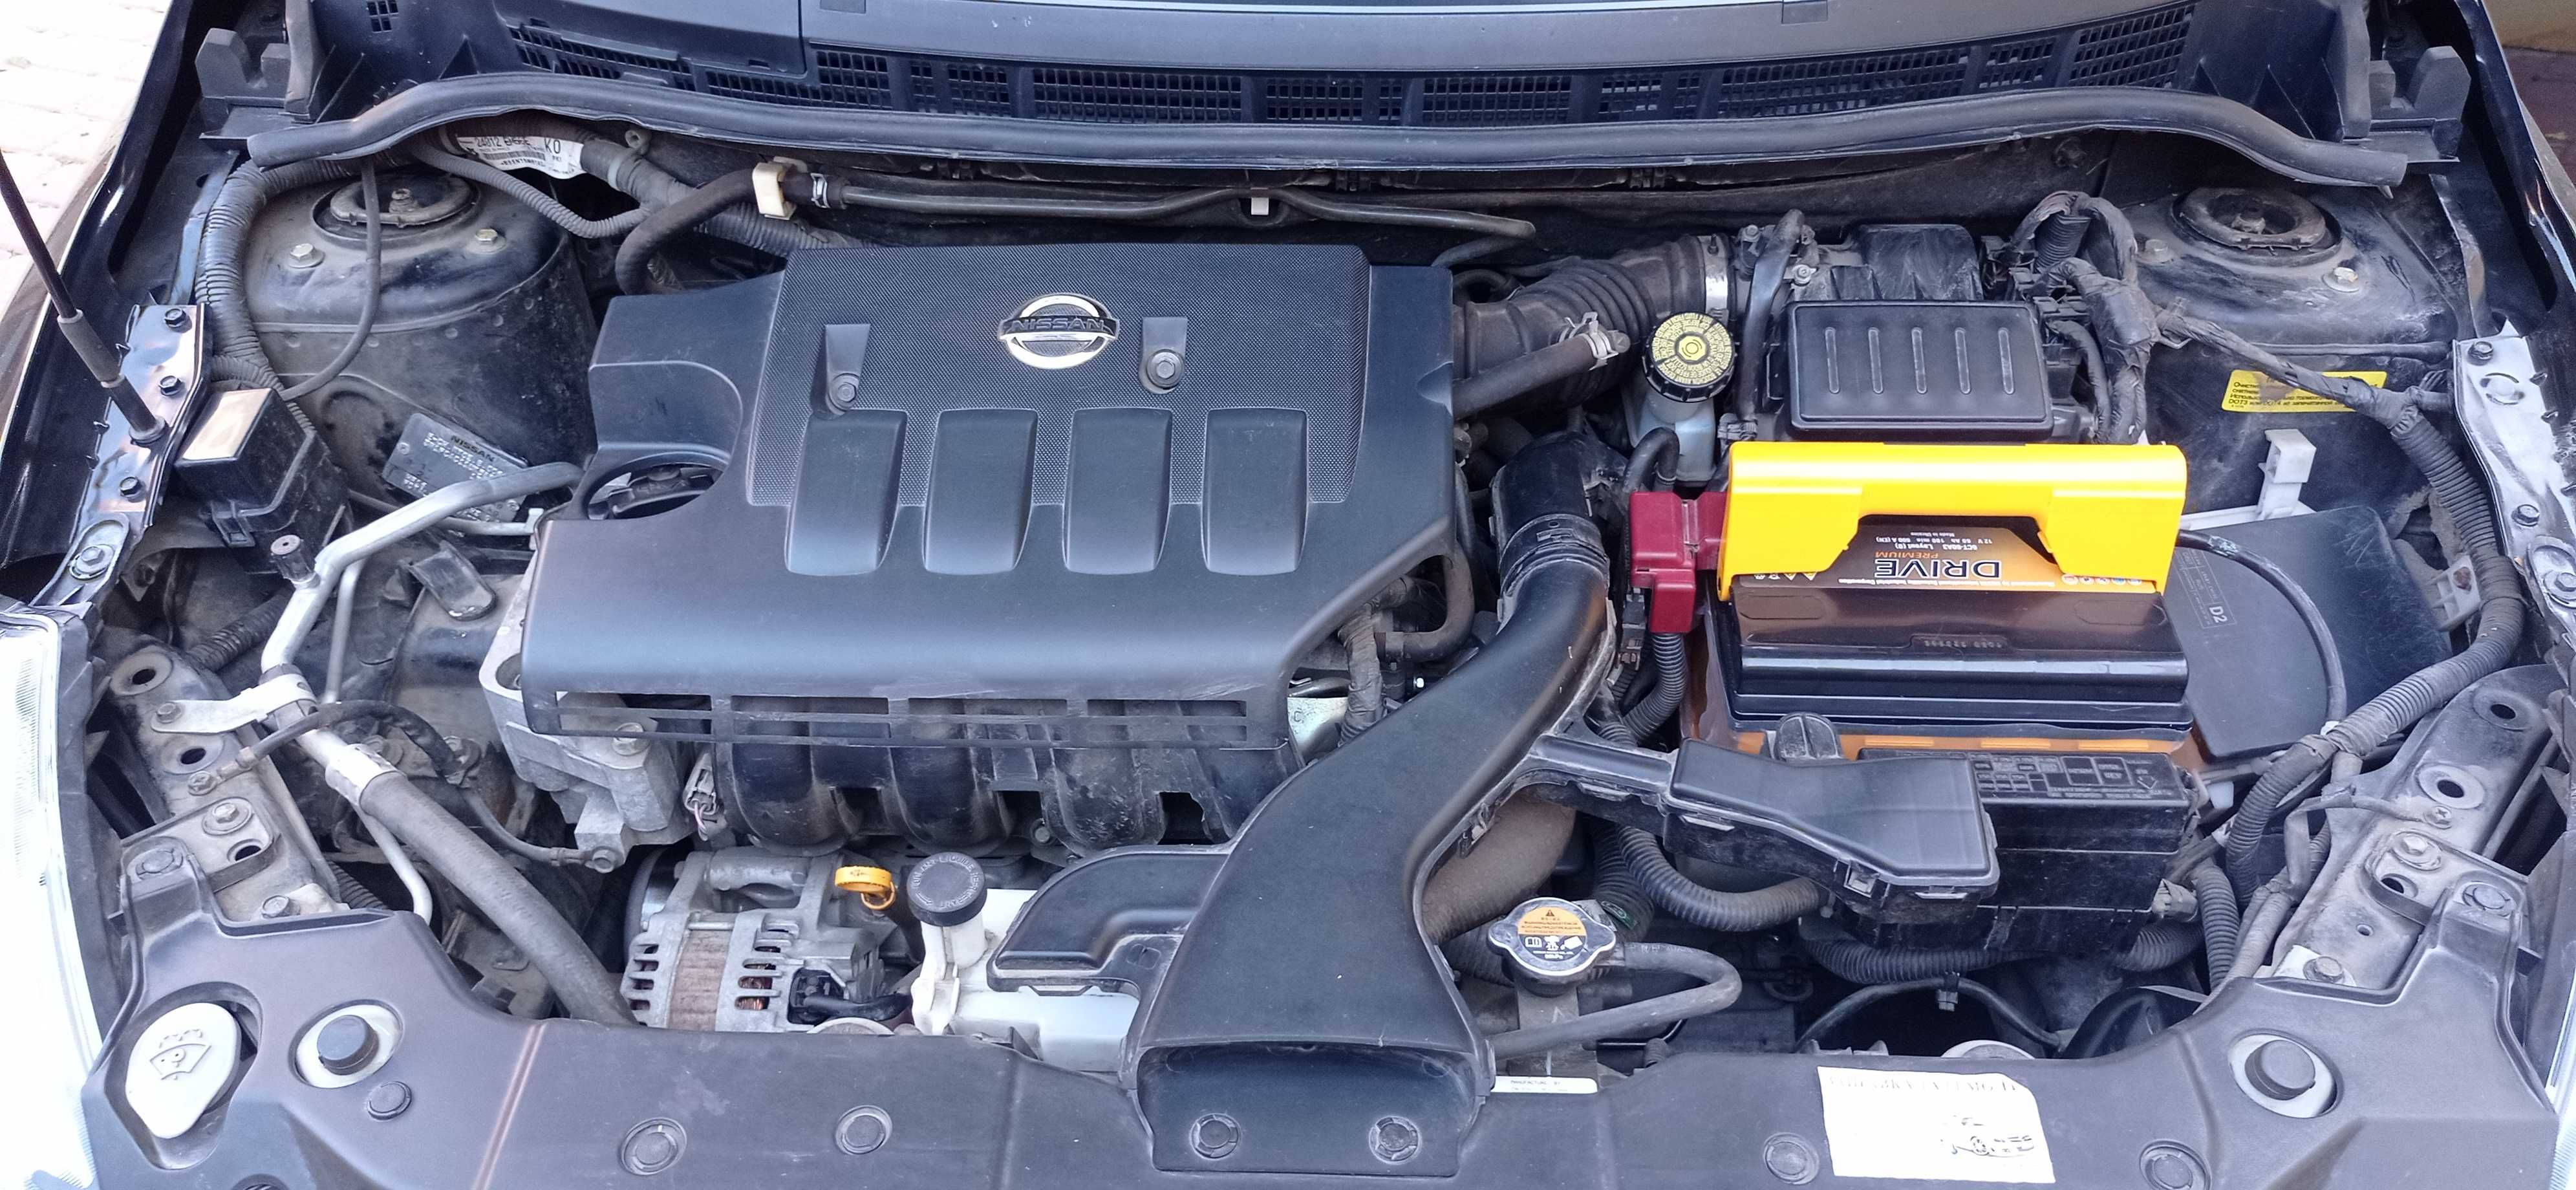 Продам автомобиль Nissan Tiida 1.6 бензин , 2013 г.в